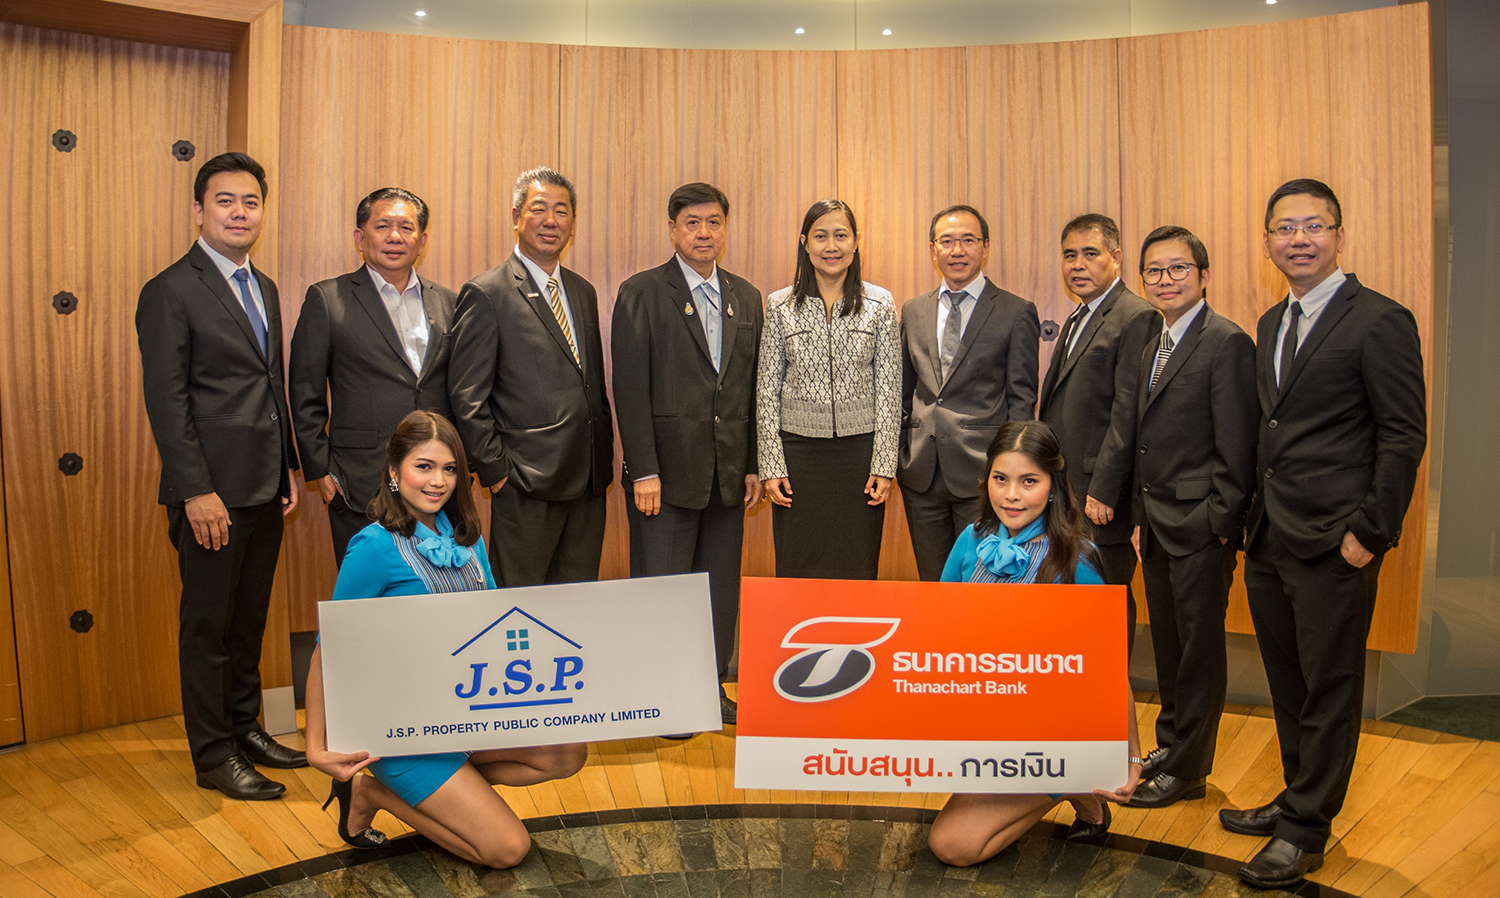 JSP เข้าขอบคุณ ธนาคารธนชาต ในโอกาสสนับสนุนสินเชื่อกว่าพันล้านบาท  